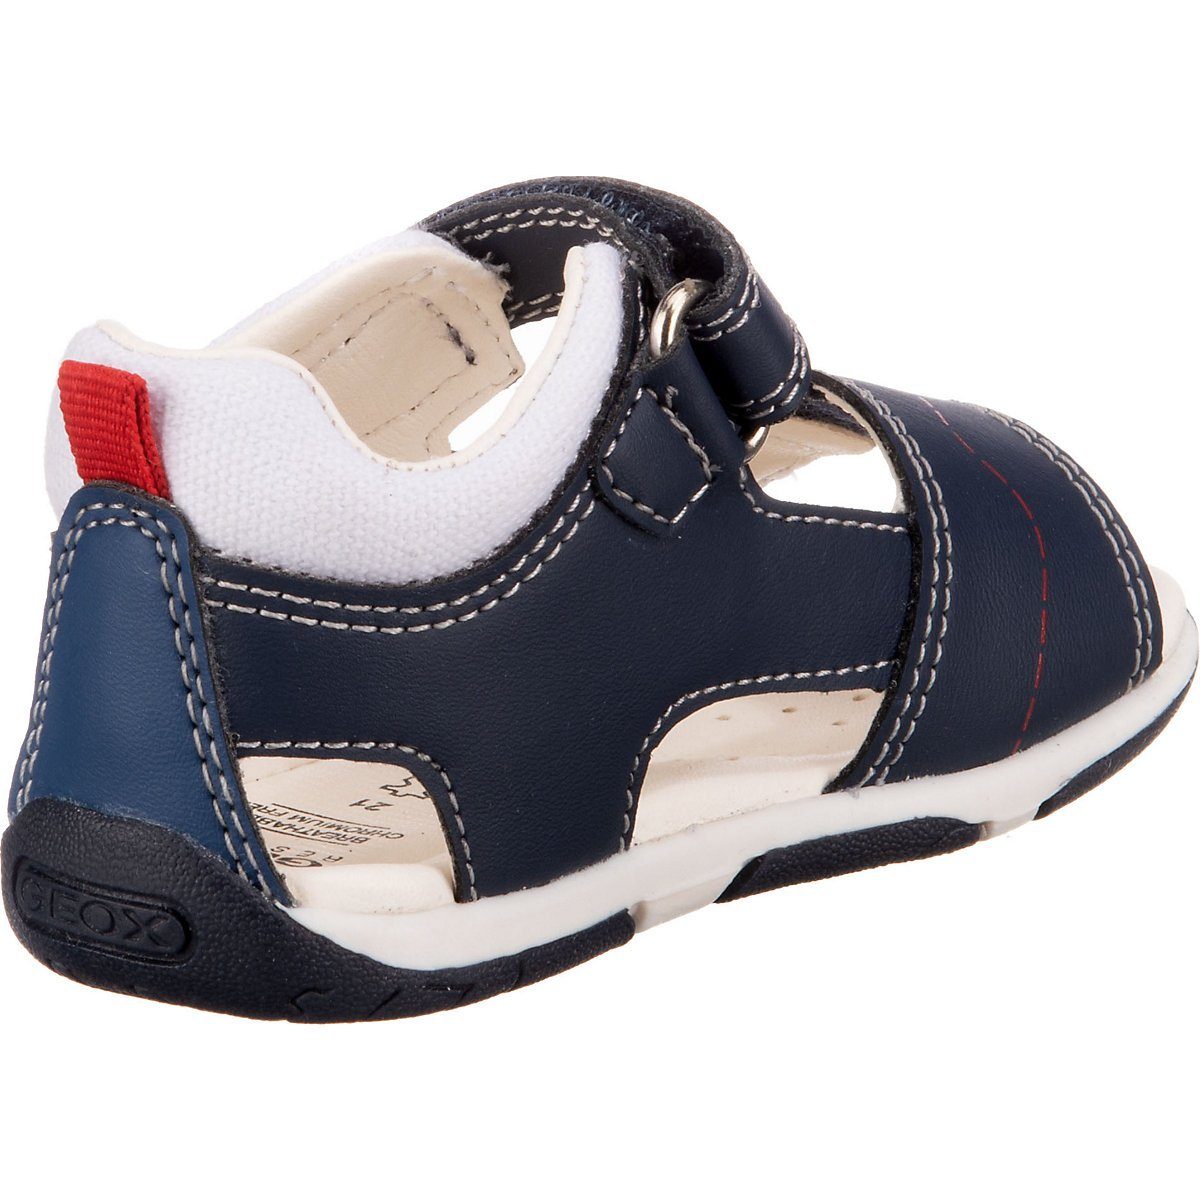 Schuhe Babyschuhe Jungen Geox Baby Sandalen TAPUZ für Jungen Sandale